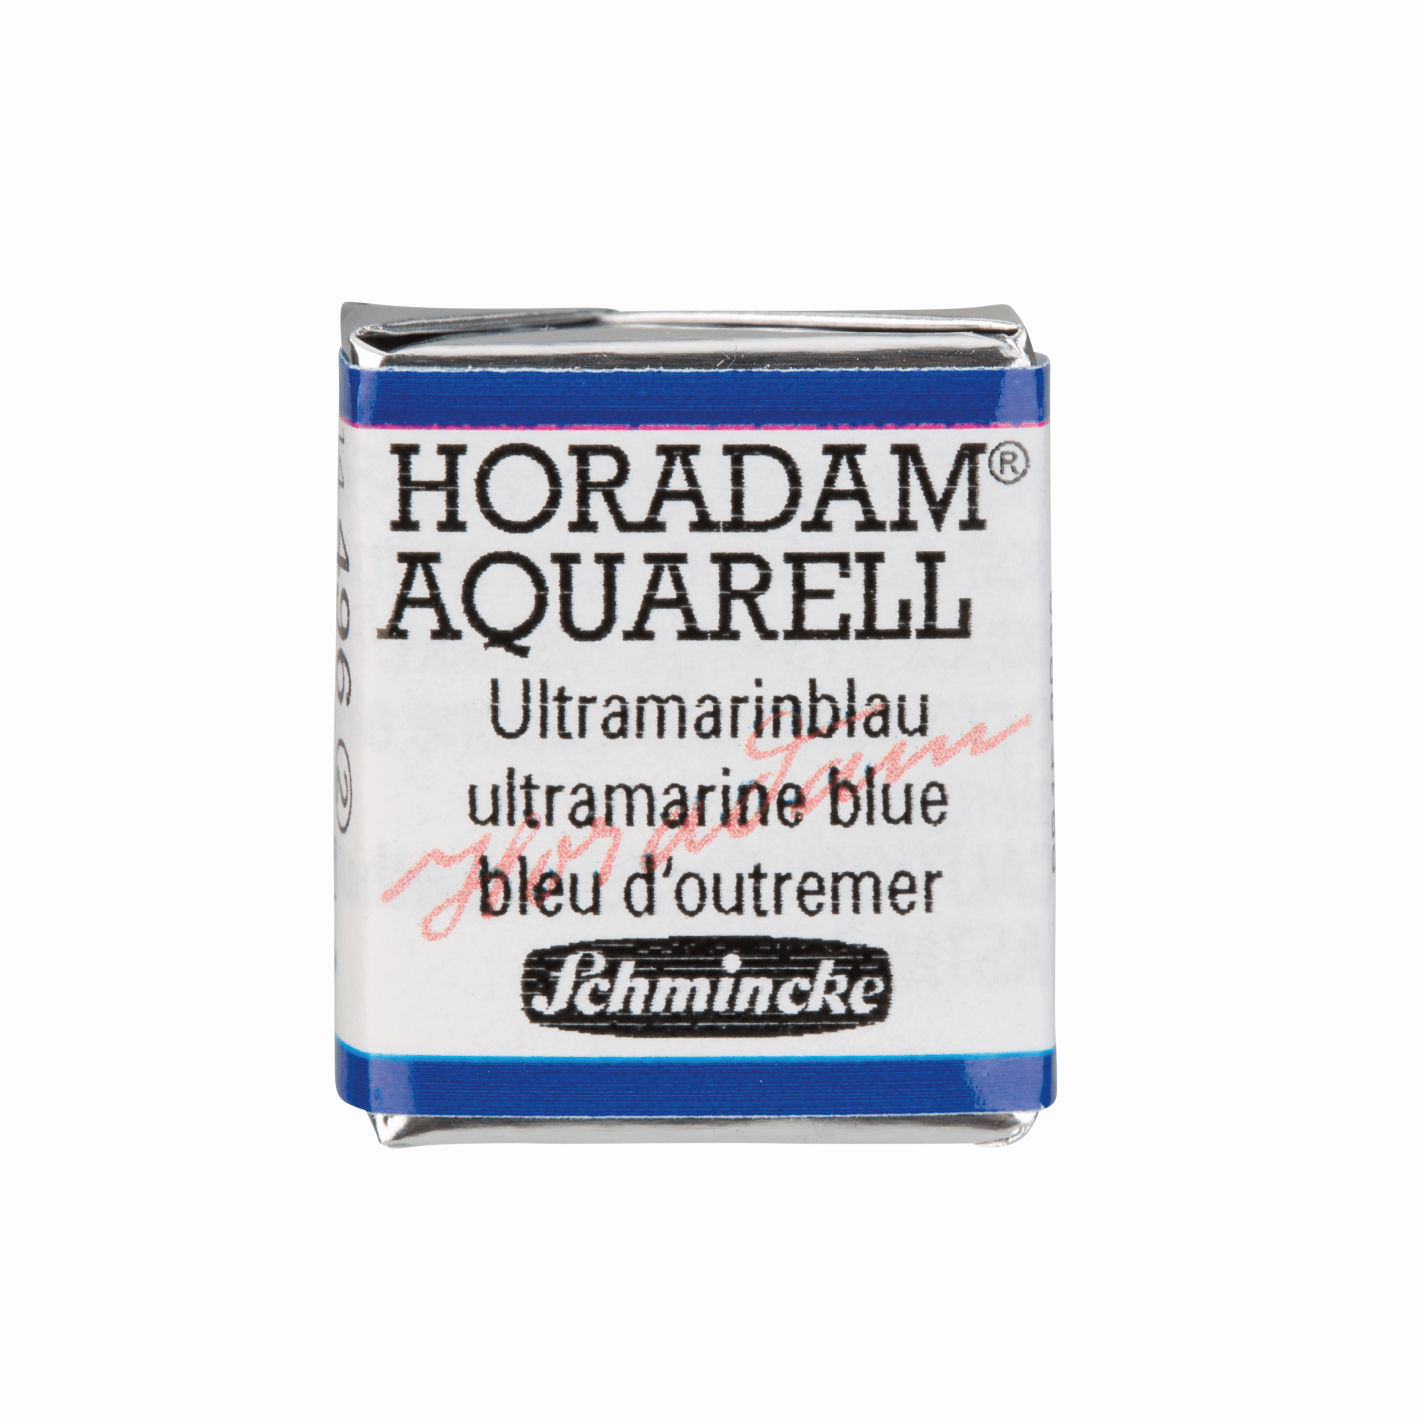 Schmincke Horadam Aquarell pans 1/2 pan Ultramarine Blue